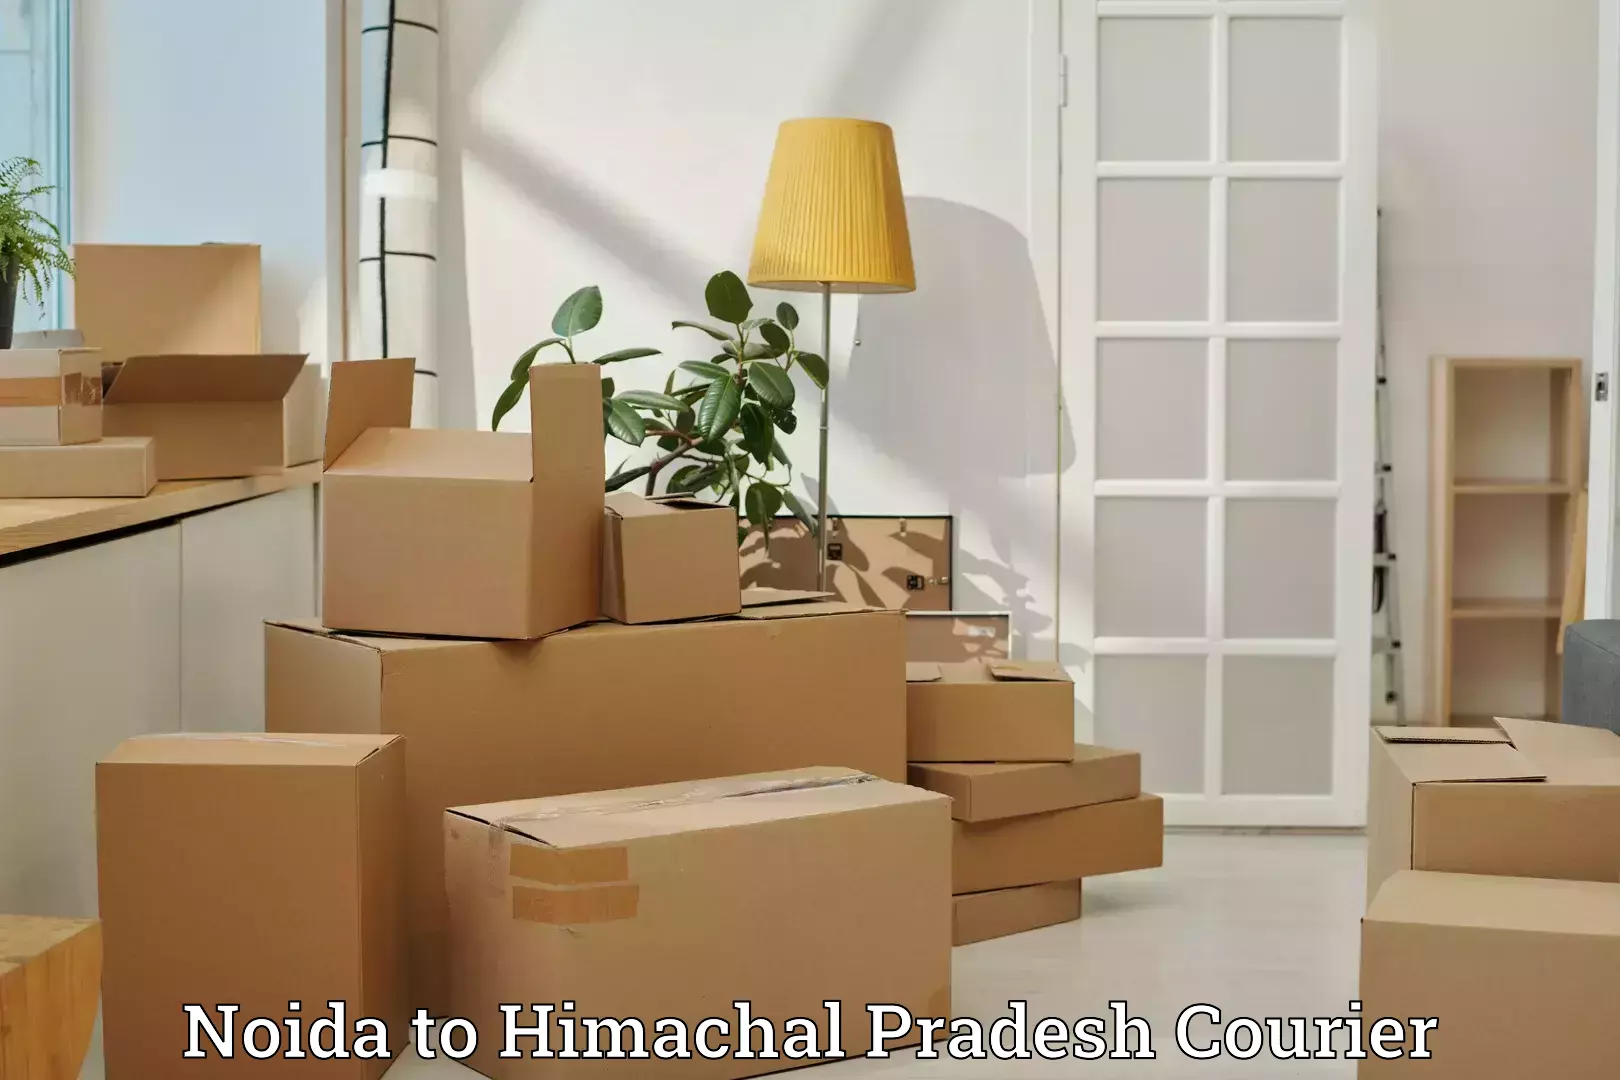 Baggage transport technology Noida to Himachal Pradesh